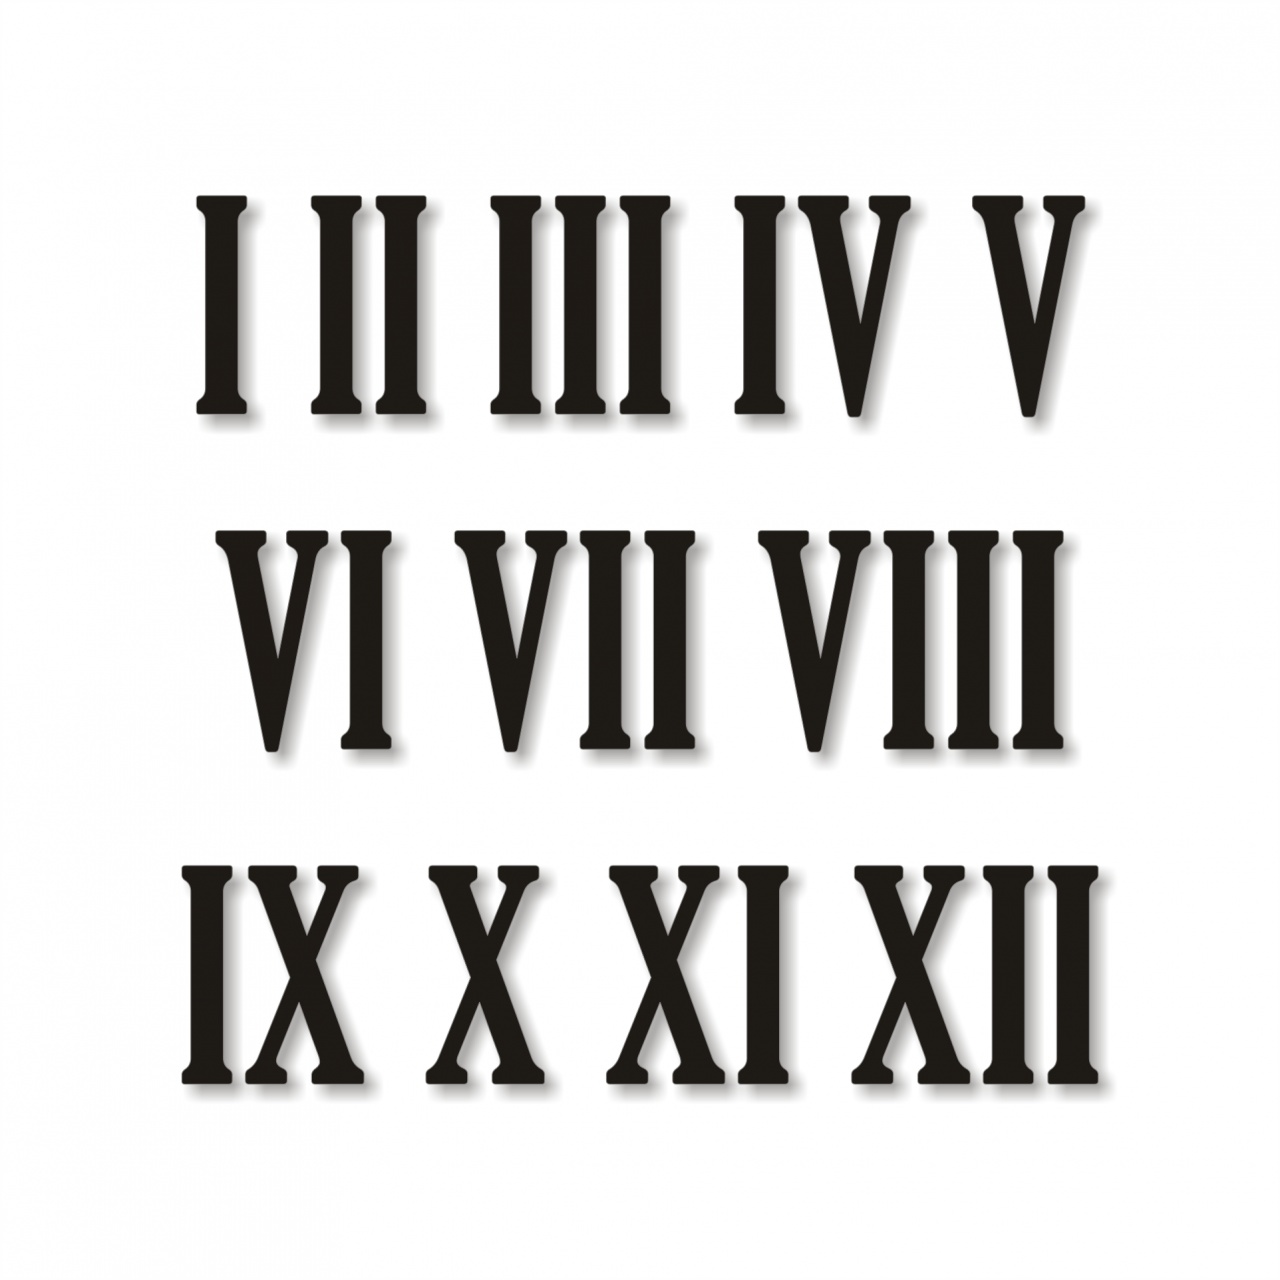 Cifre romane pentru ceas 1-12, 5 cm, plexi oglindă aurie